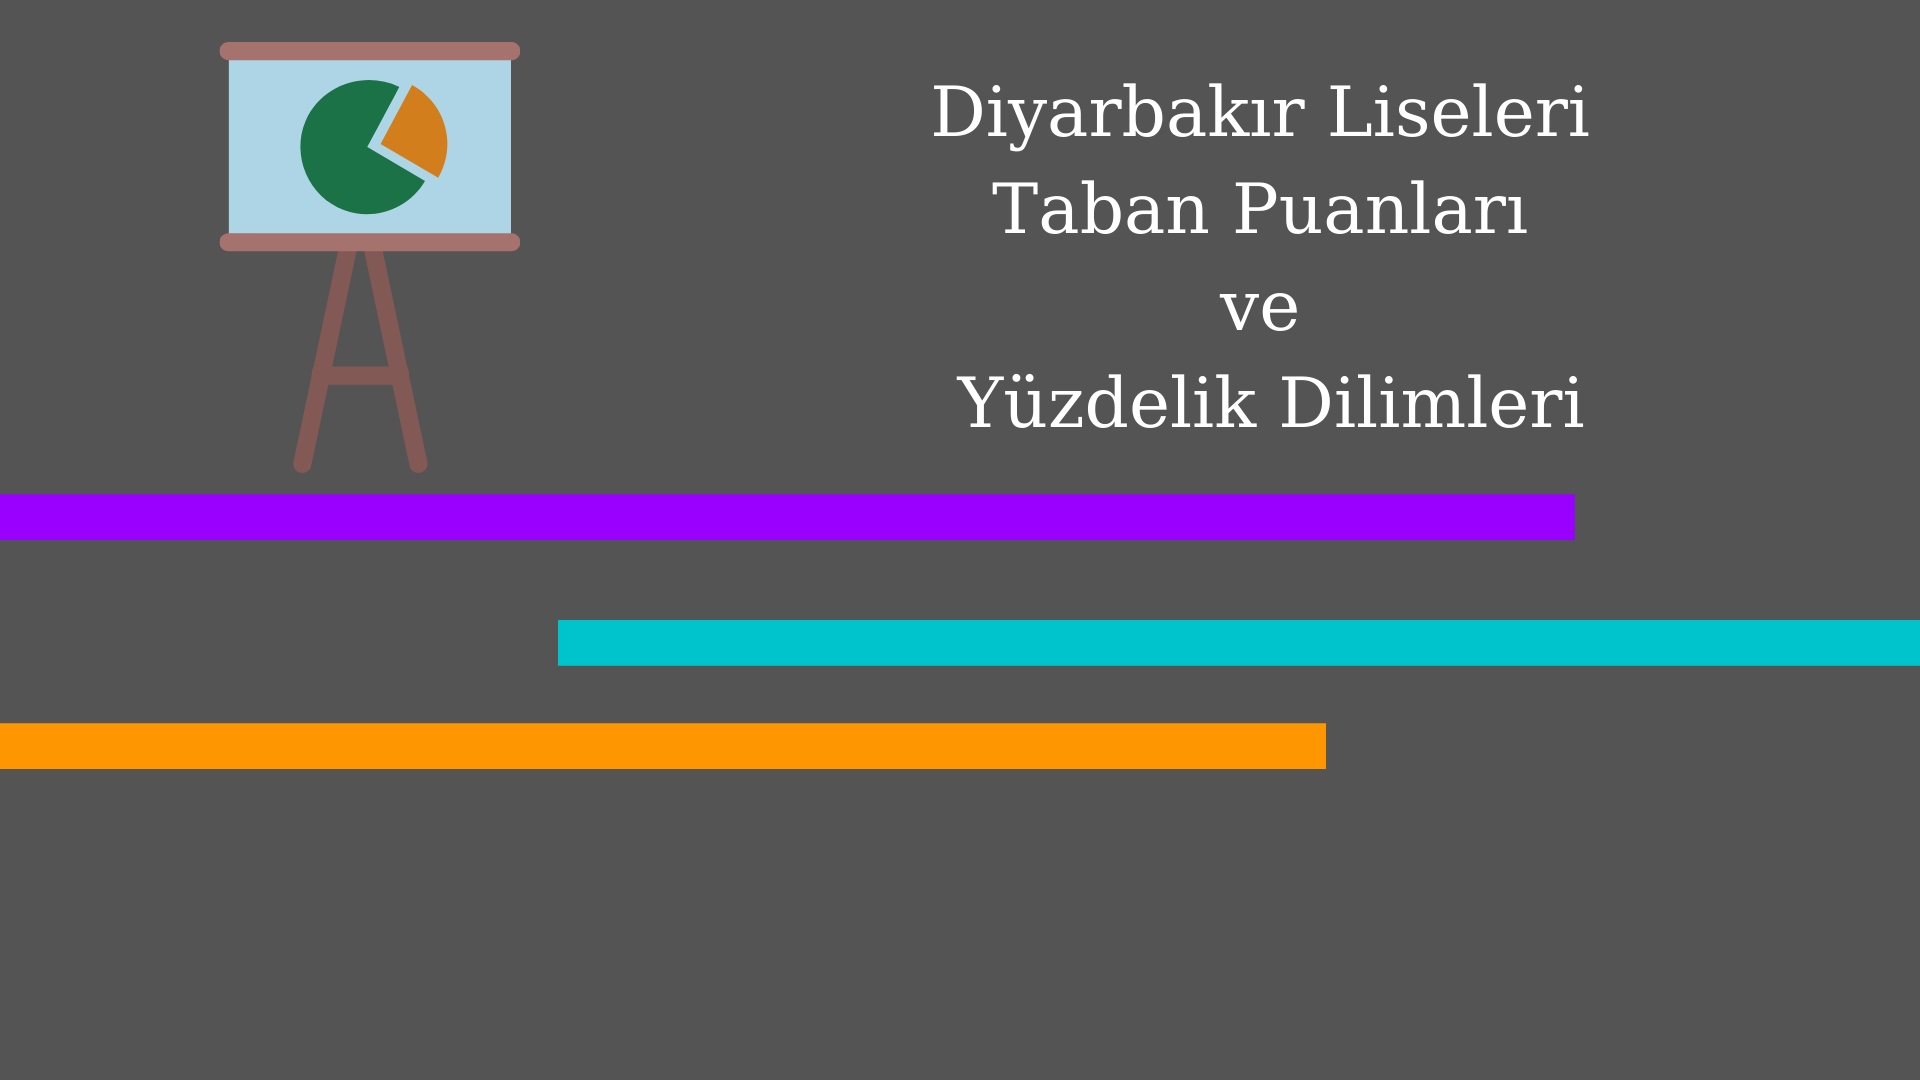 Diyarbakır Liseleri Taban Puanları ve Yüzdelik Dilimleri 2021